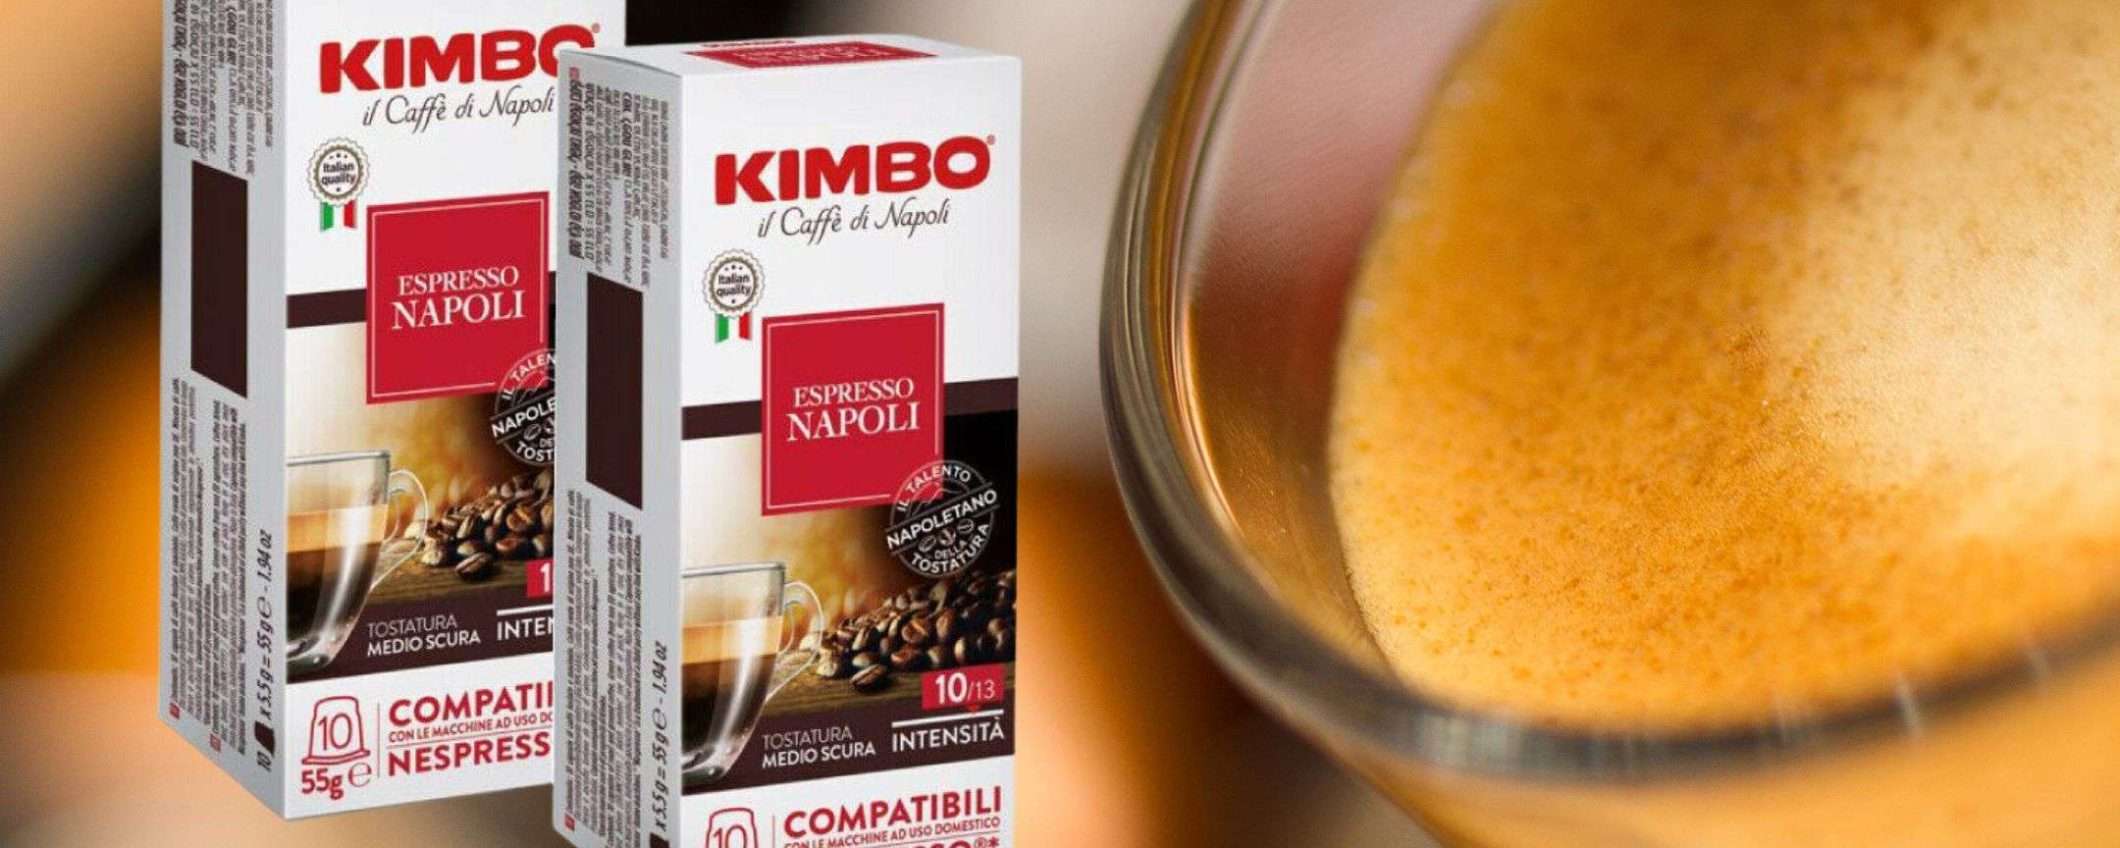 600 capsule caffè Kimbo Miscela Napoli per Nespresso a prezzo WOW su eBay (solo 13cent a capsula)